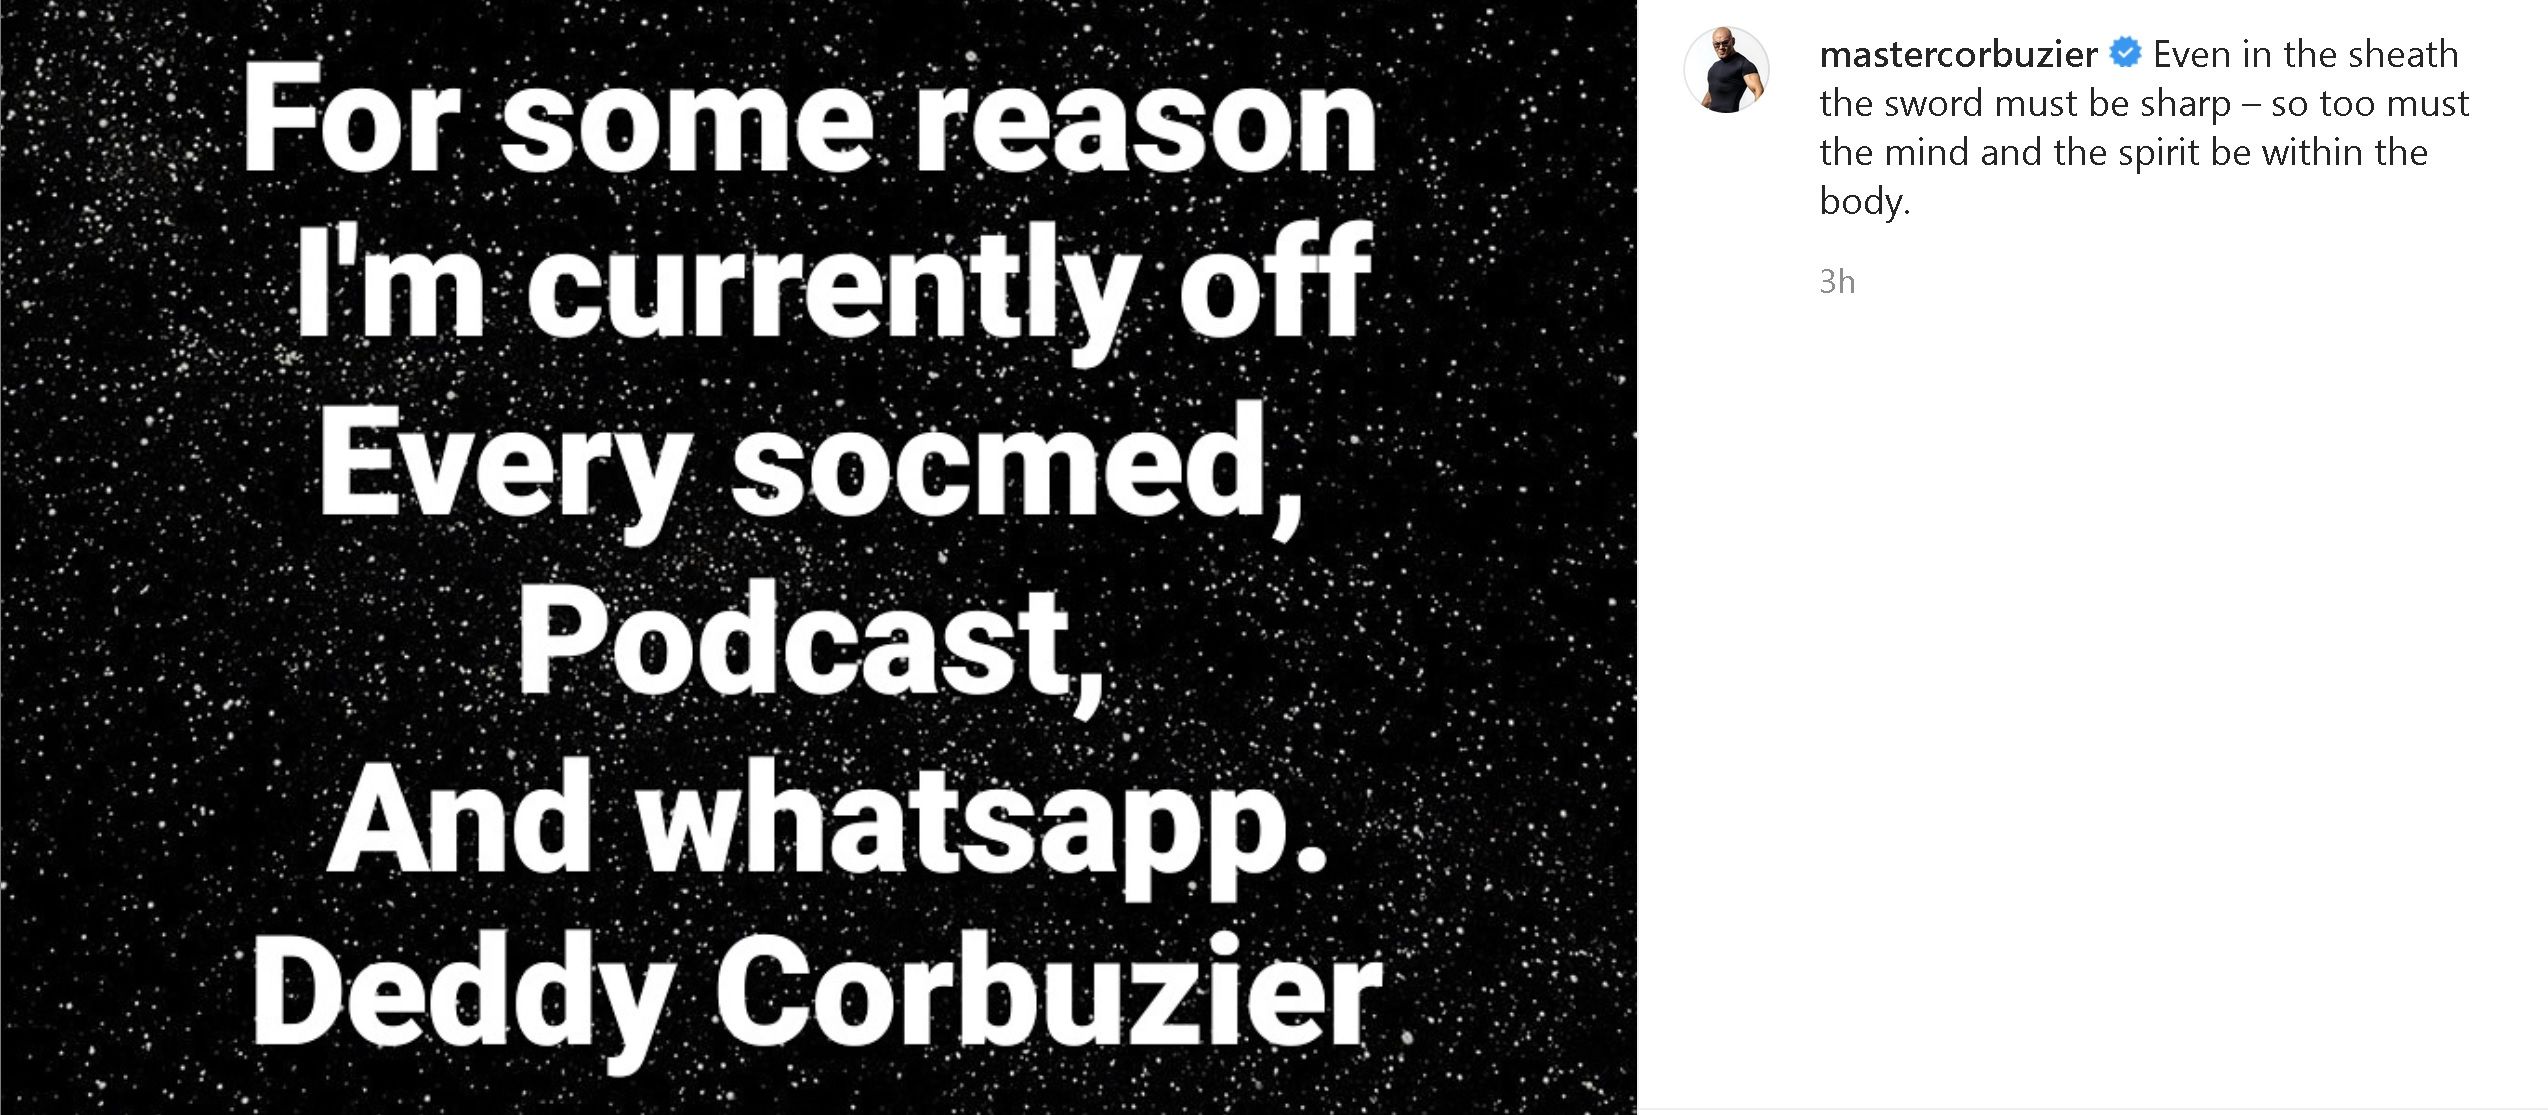 Unggahan Deddy Corbuzier di Instagram pribadinya.